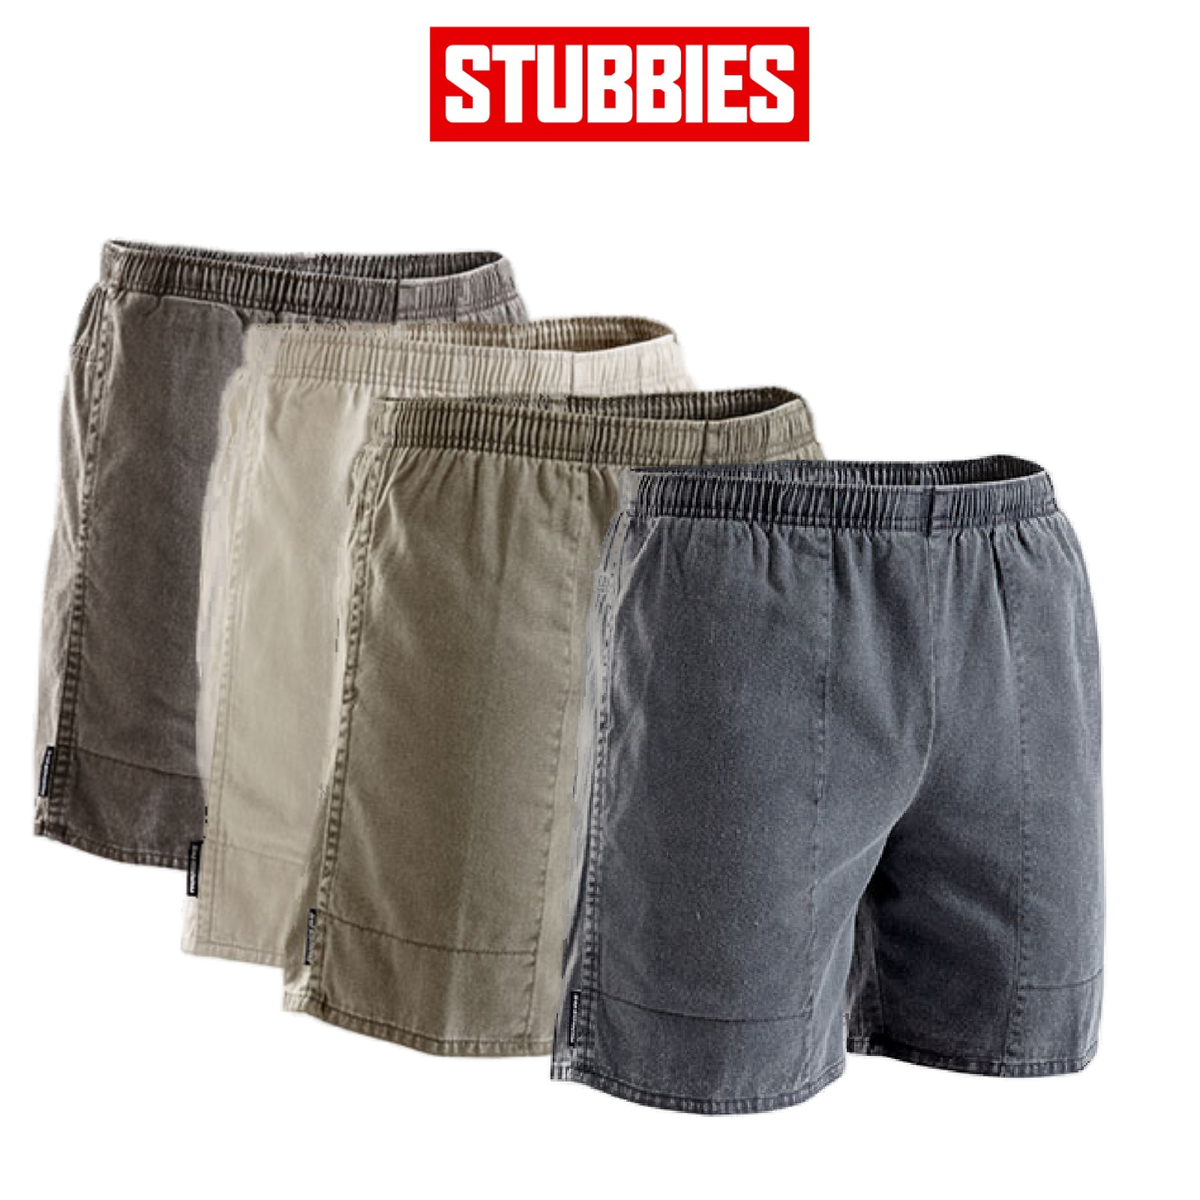 Stubbies Ruggers Men Pigment Dyed Cotton Elastic Comfy Waist Shorts Work SE420X